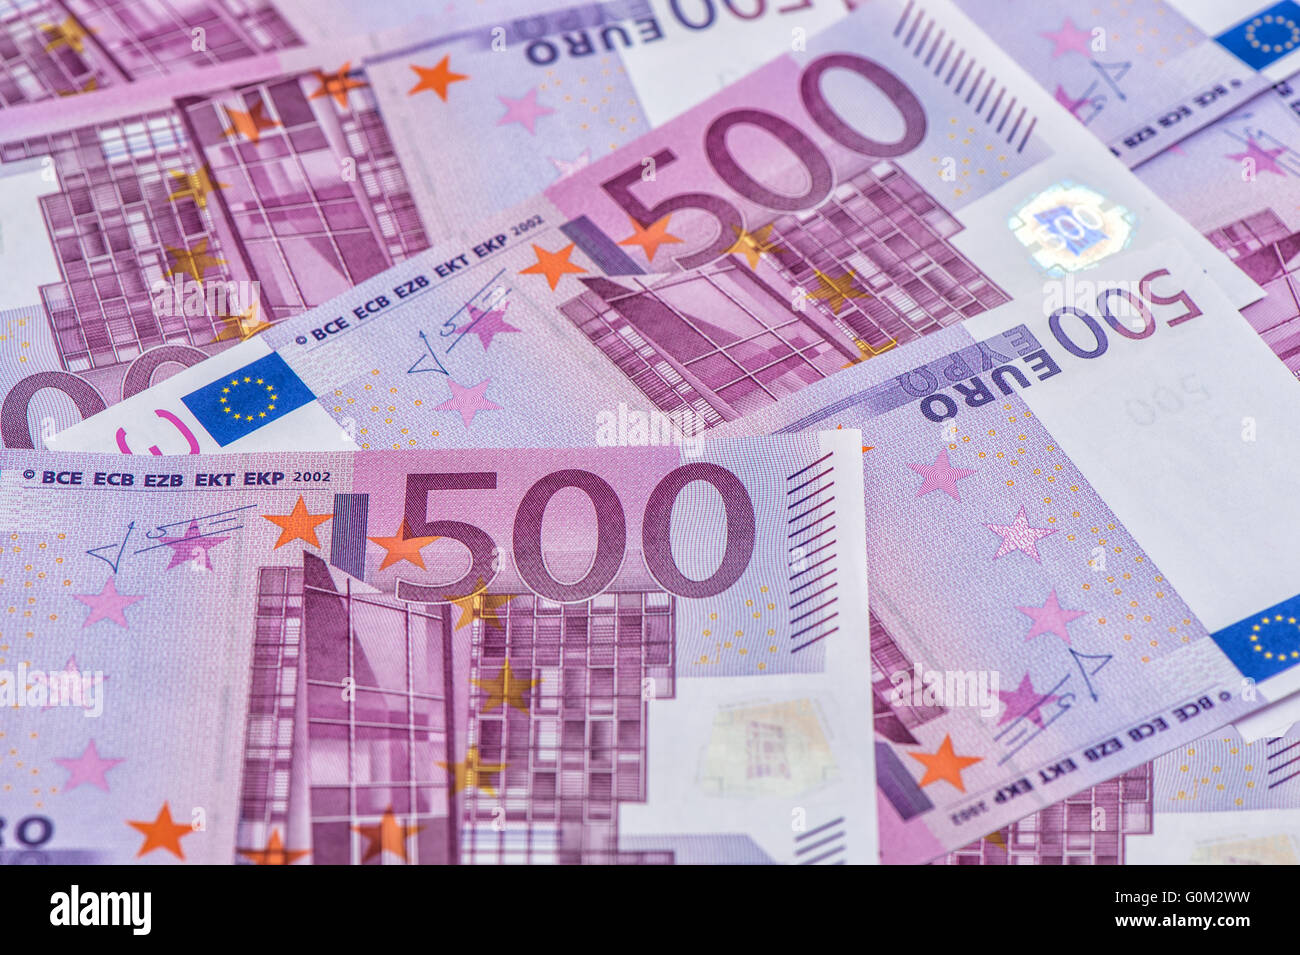 Fünfhundert Notizen. Währung der Europäischen Union. Geld-Hintergrund Stockfoto